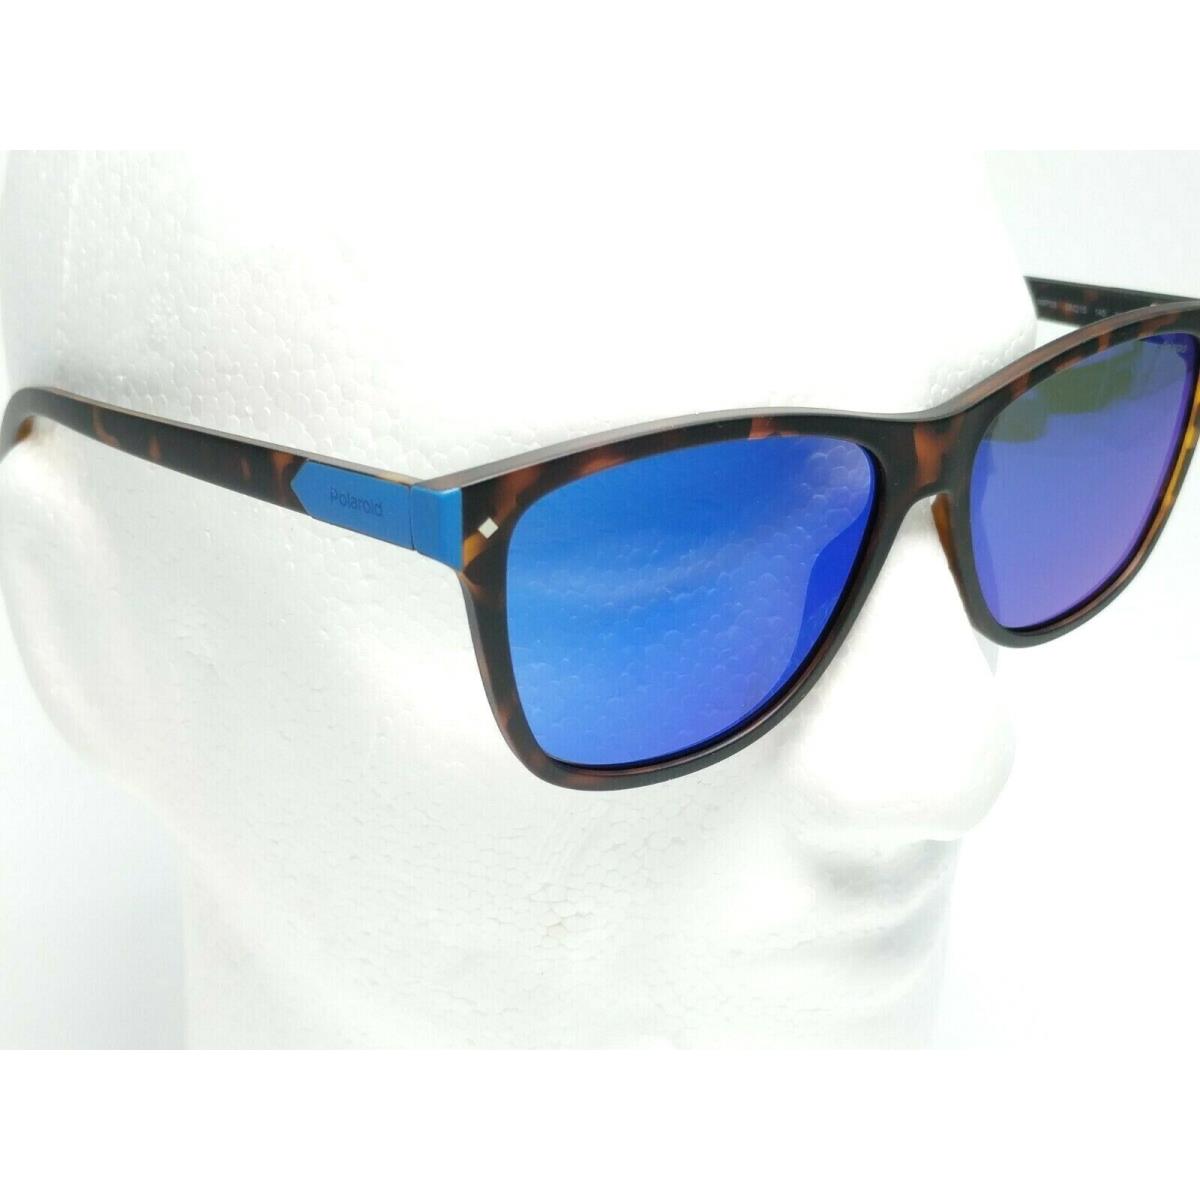 Polaroid sunglasses  - Brown Frame, Blue Lens